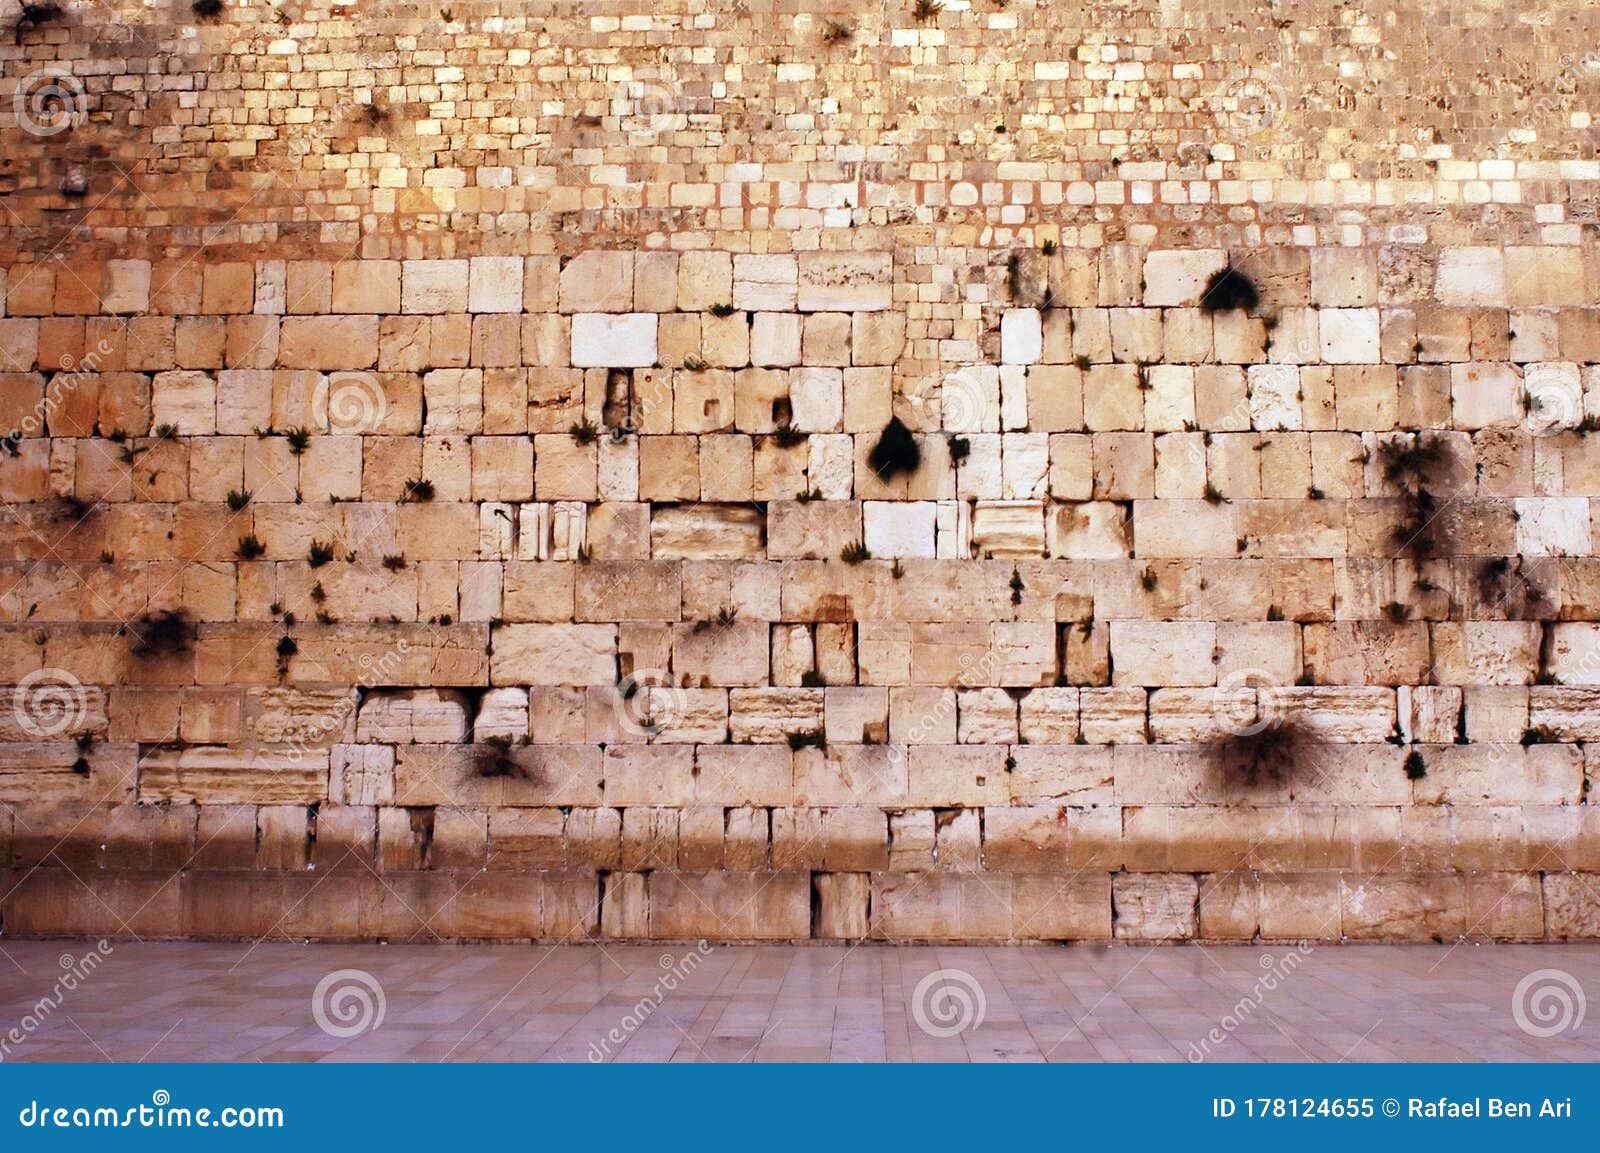 the western wailing wall kotel empty in jerusalem old city israel